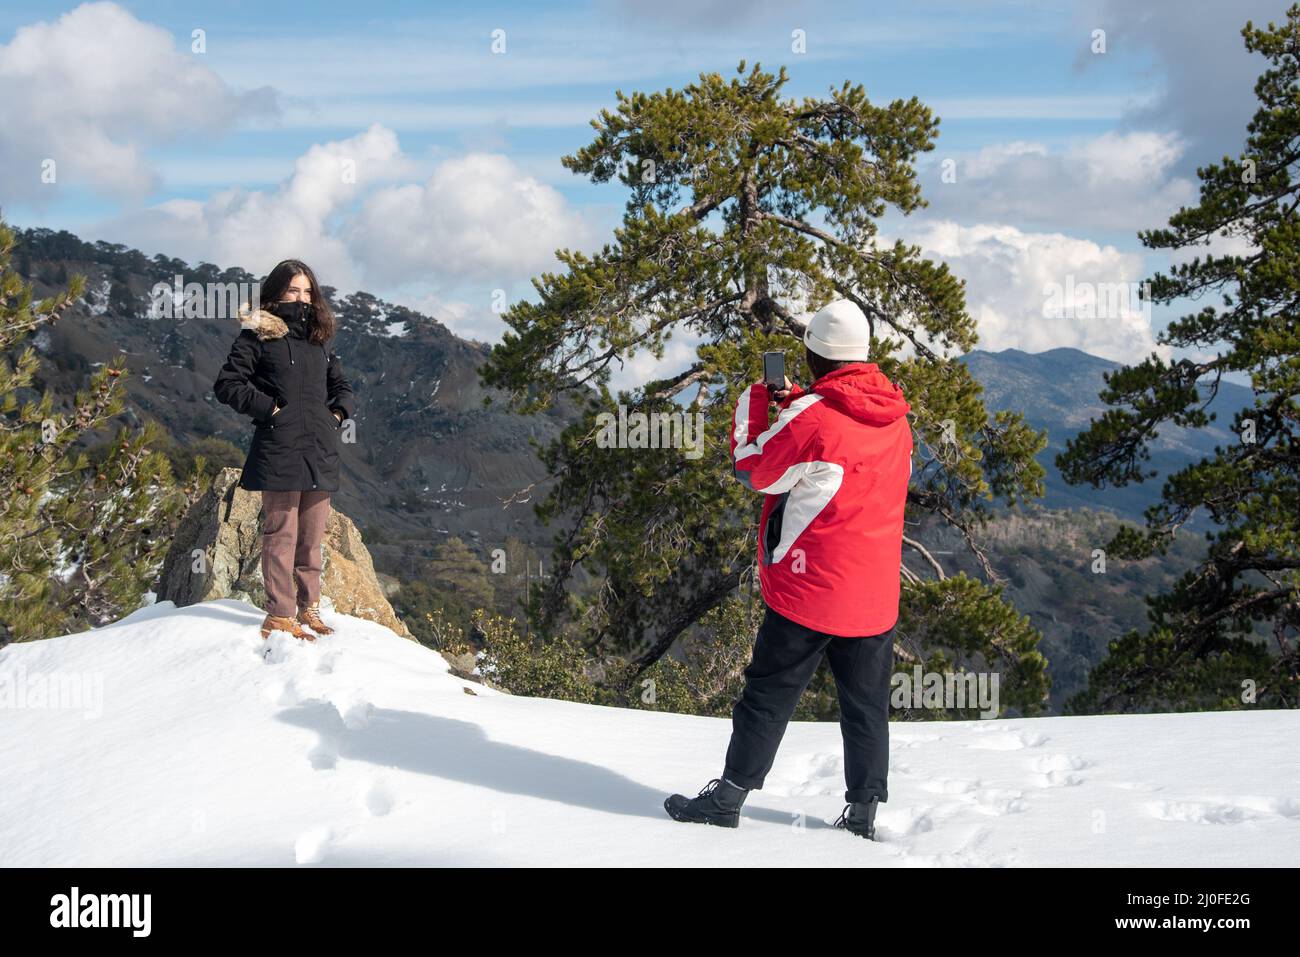 Zwei junge glückliche Teenager, die mit einem Mobiltelefon auf einem verschneiten Berg Fotos machen. Stockfoto